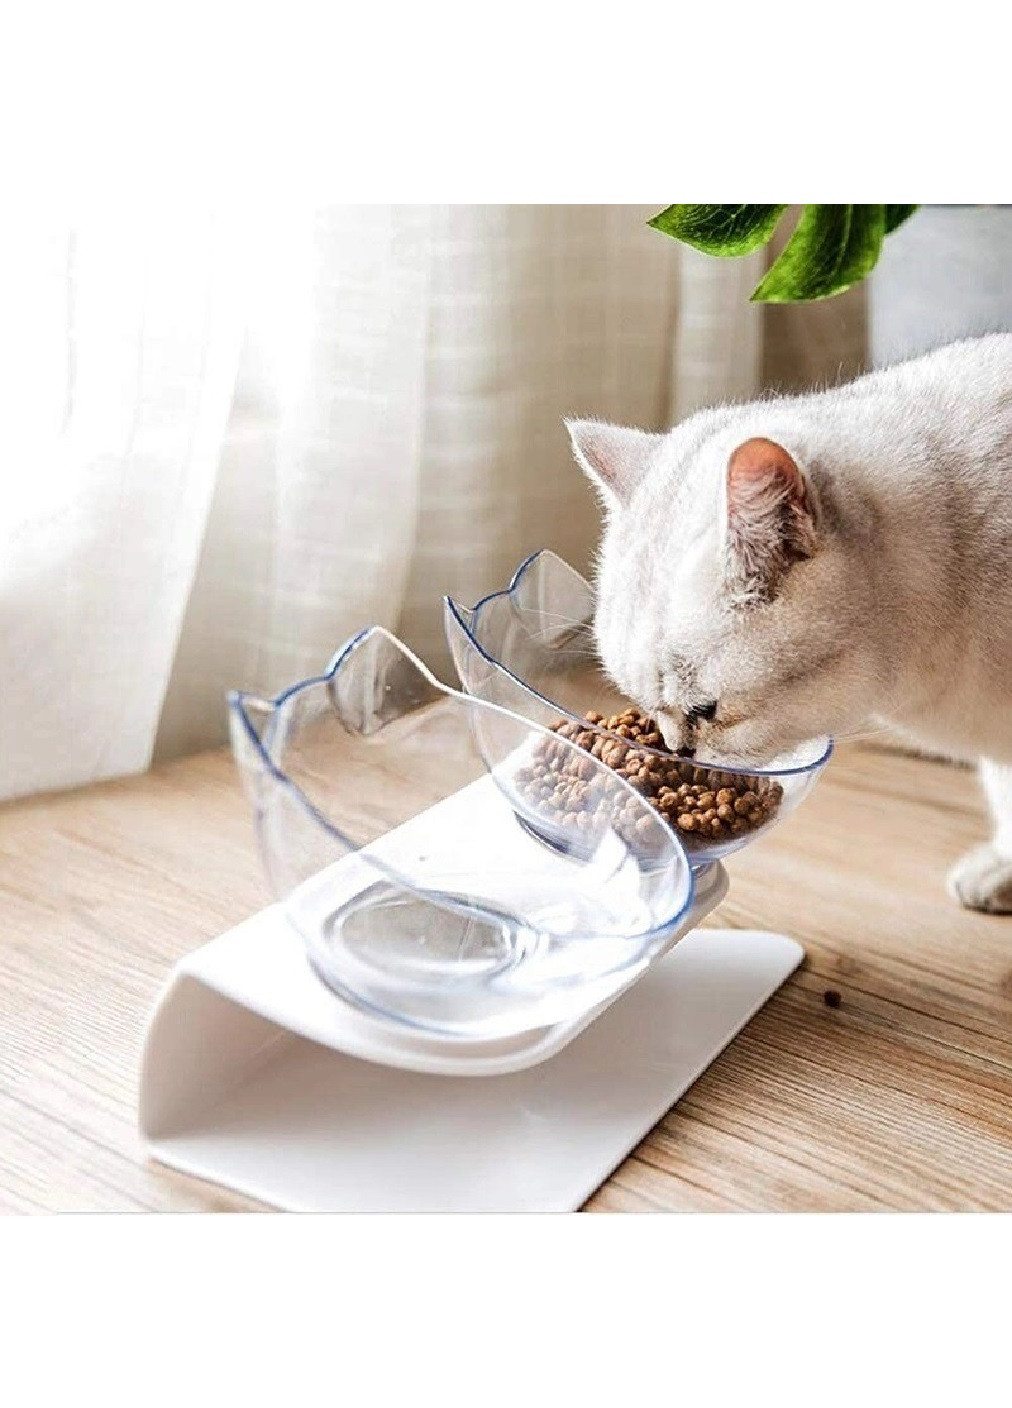 Двойная пластиковая миска на подставке для корма воды для домашних животных кошек собак (473619-Prob) Белая с прозрачным Unbranded (255621712)